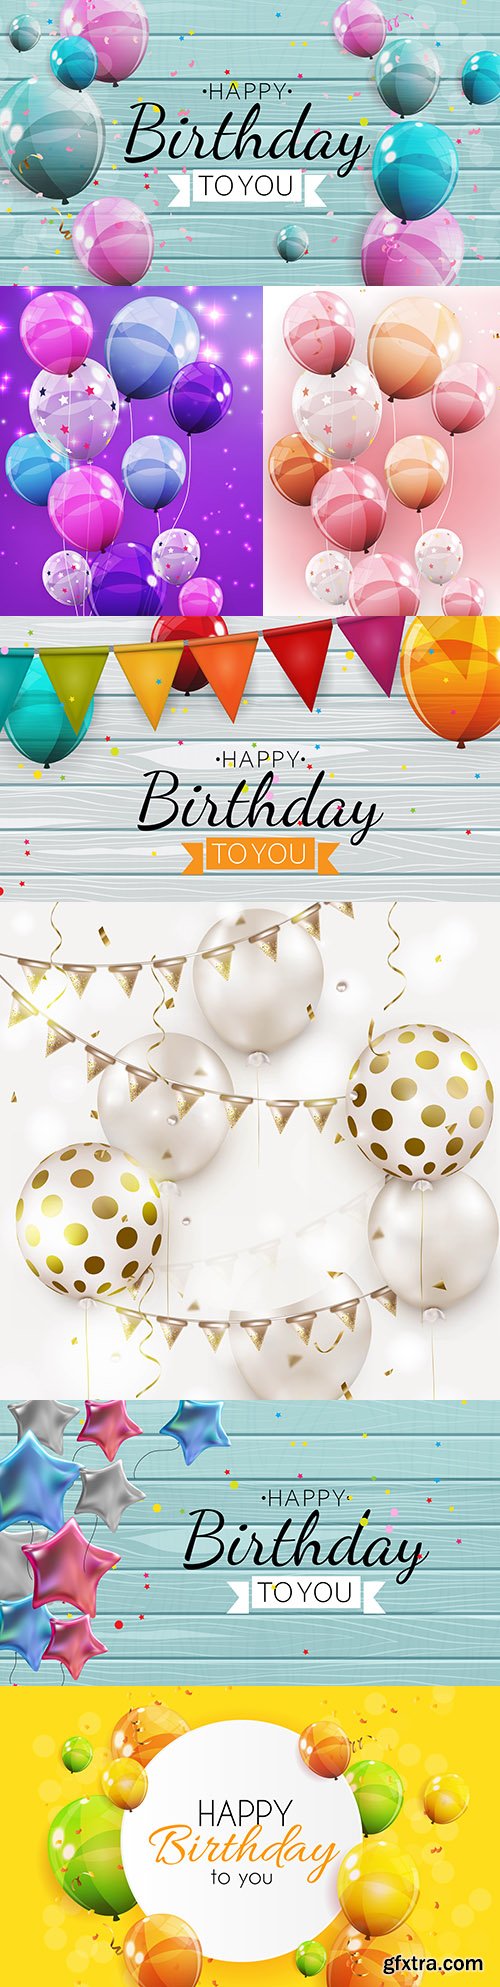 Happy birthday holiday invitation realistic balloons 17